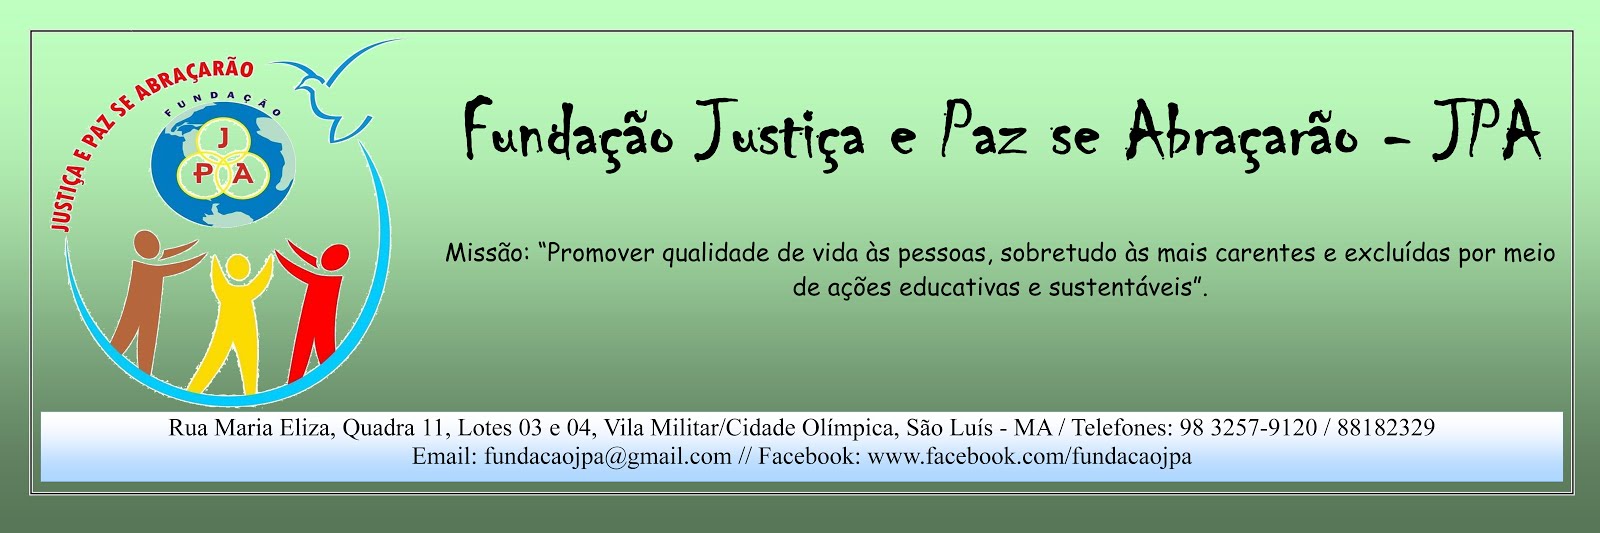 Fundação Justiça e Paz se Abraçarão - JPA